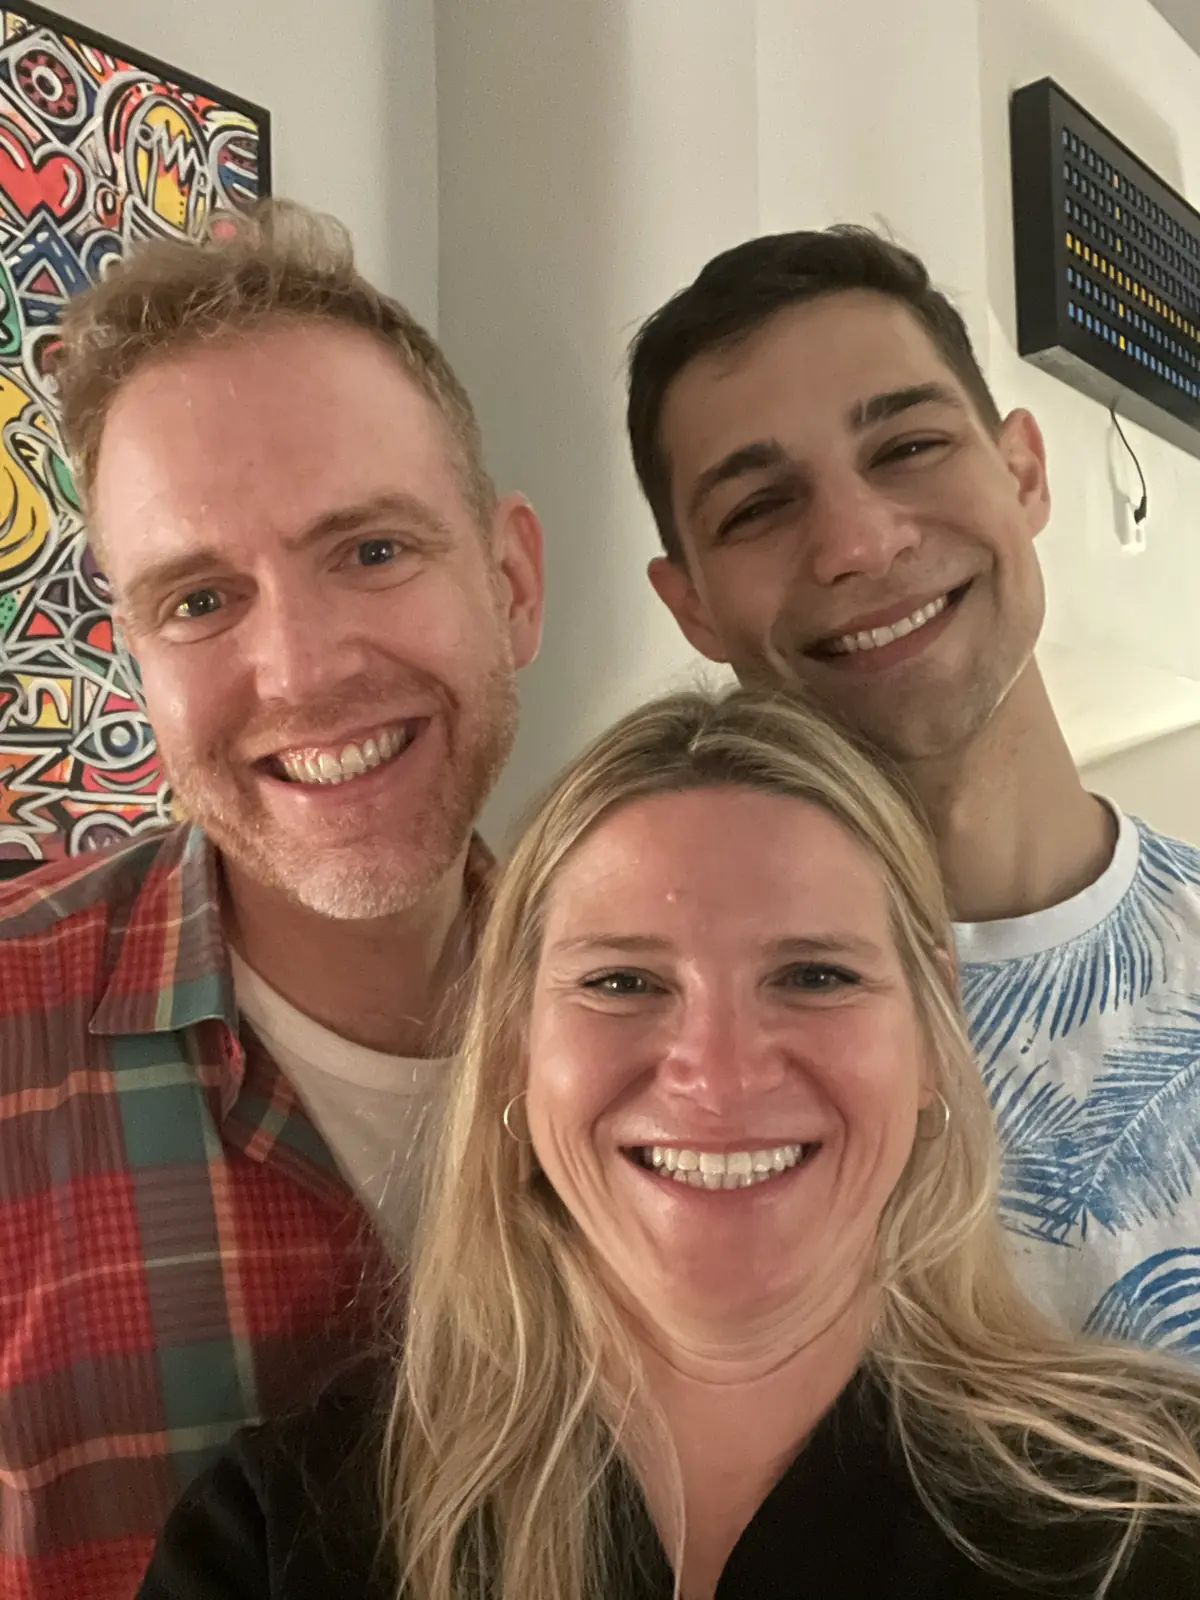 Arthur, Katja, and Jeremiah selfie